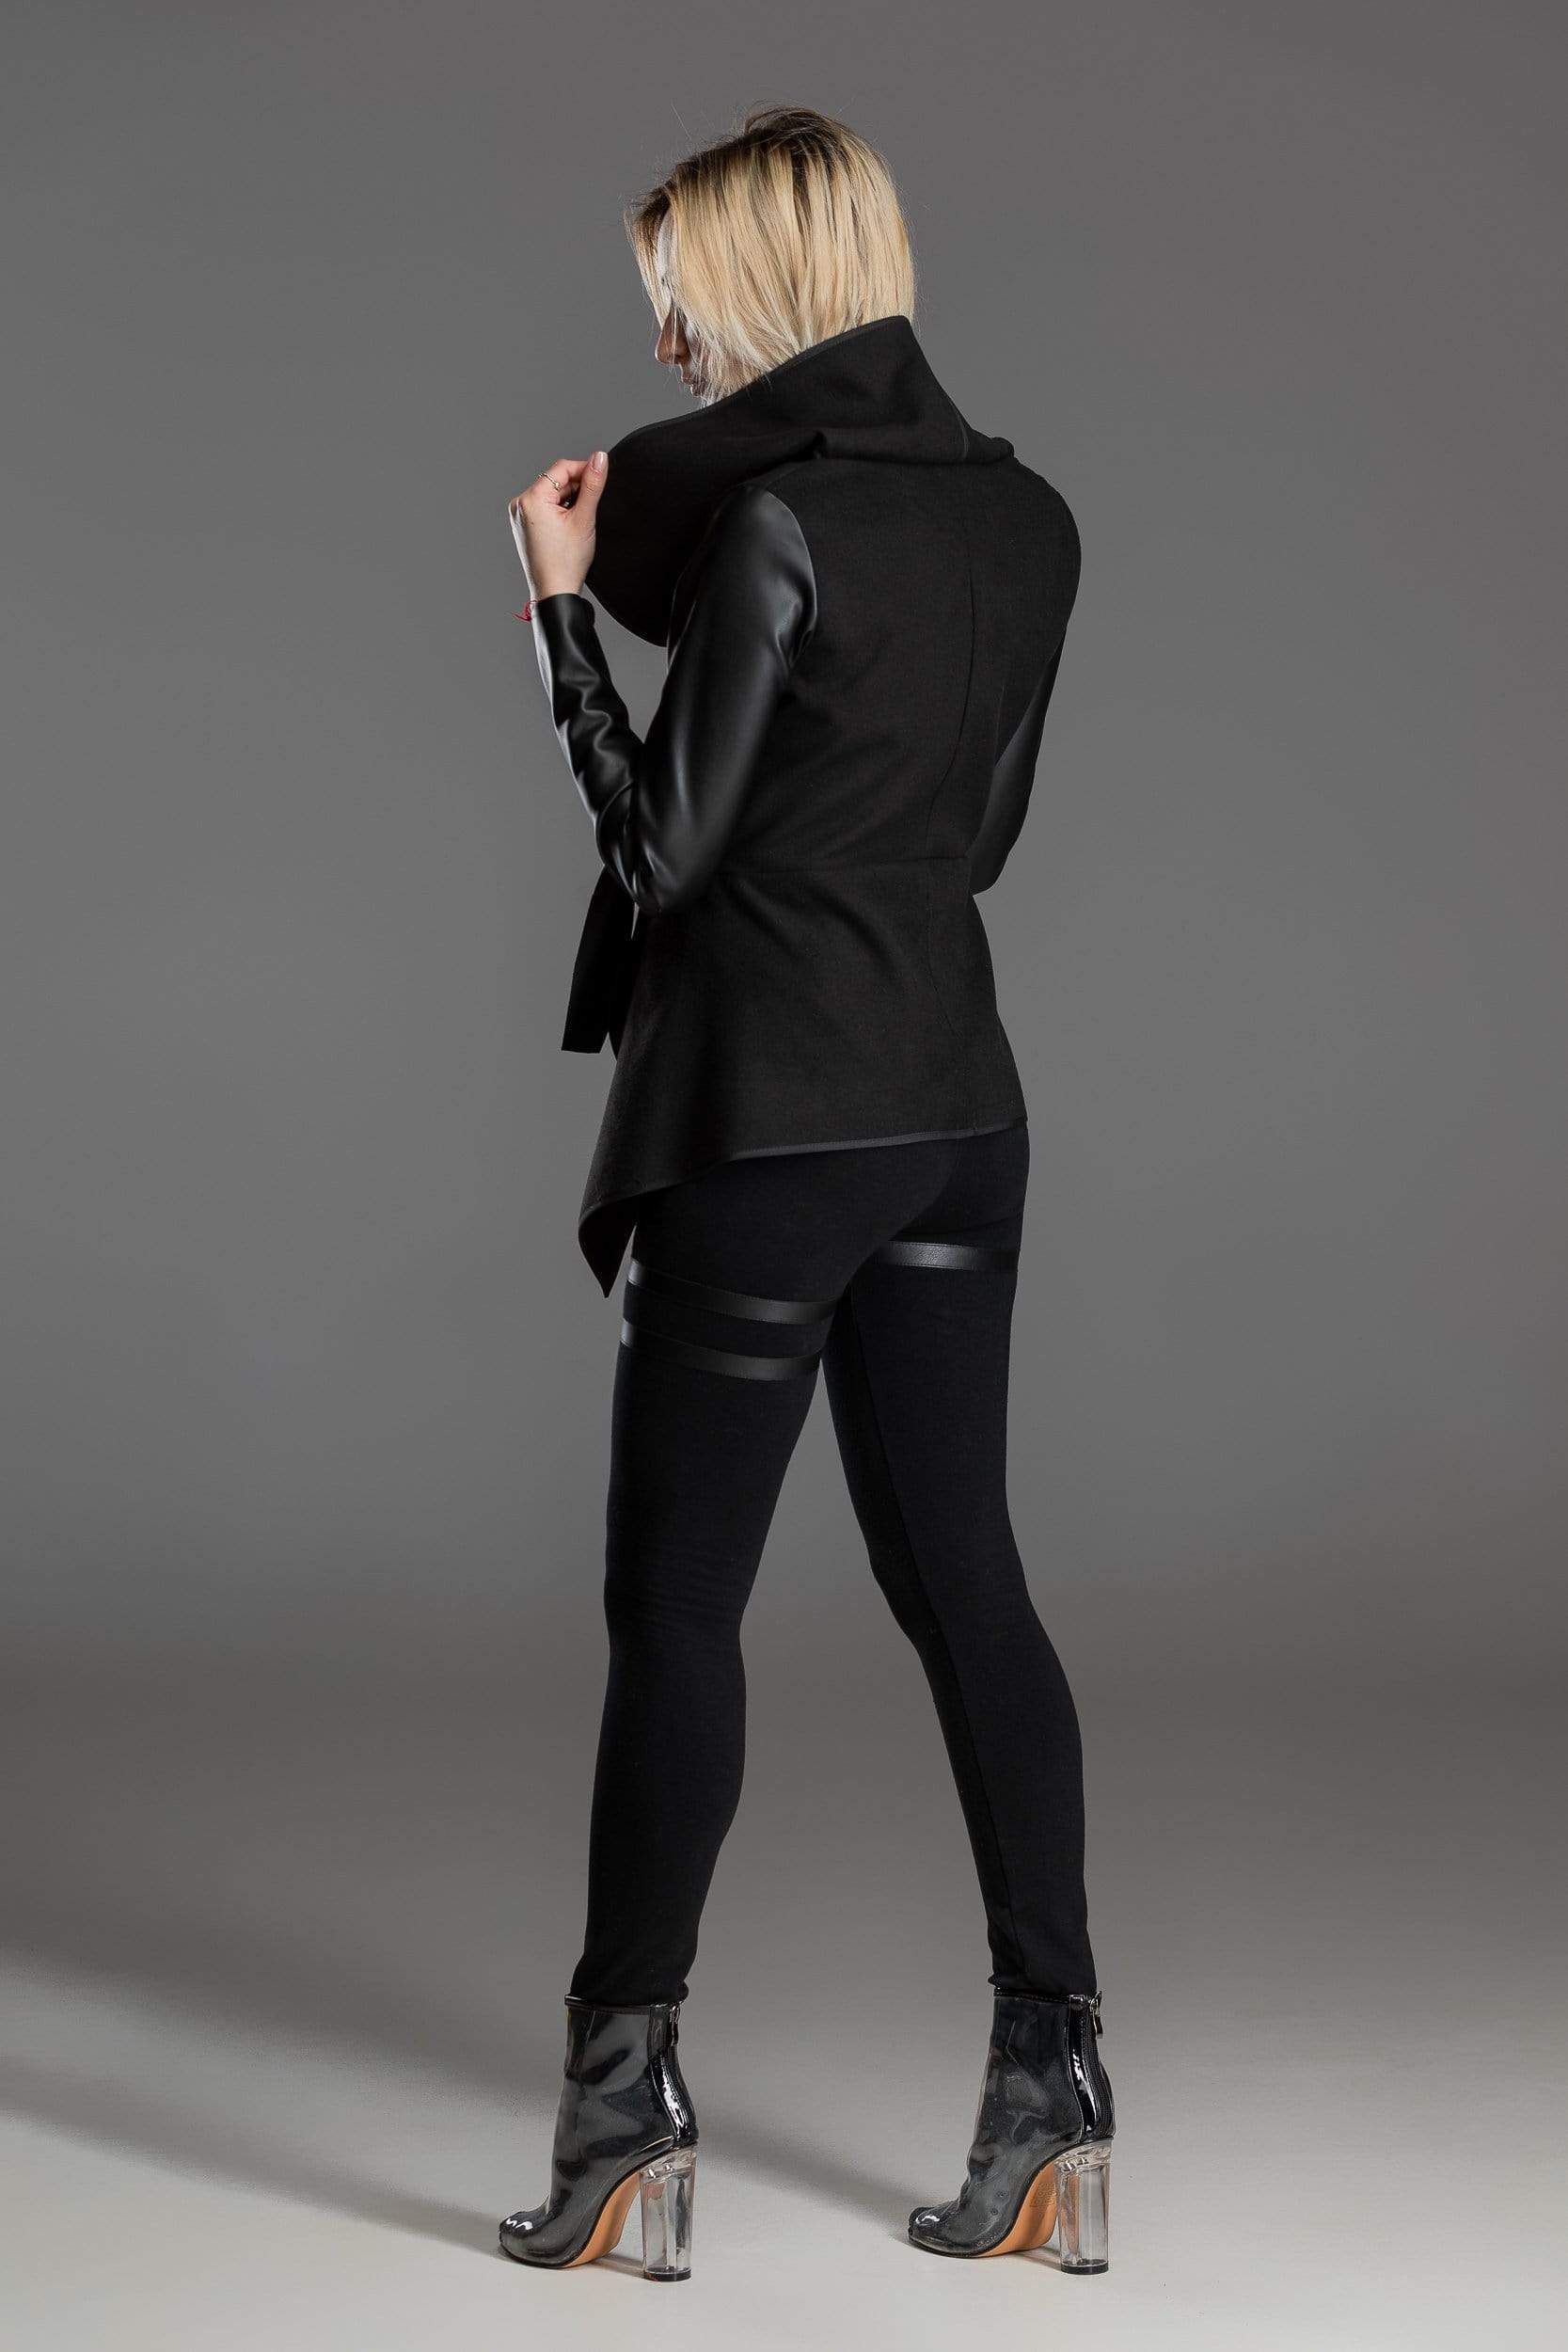 MDNT45 Coats & Jackets for Woman Asymmetric black jacket